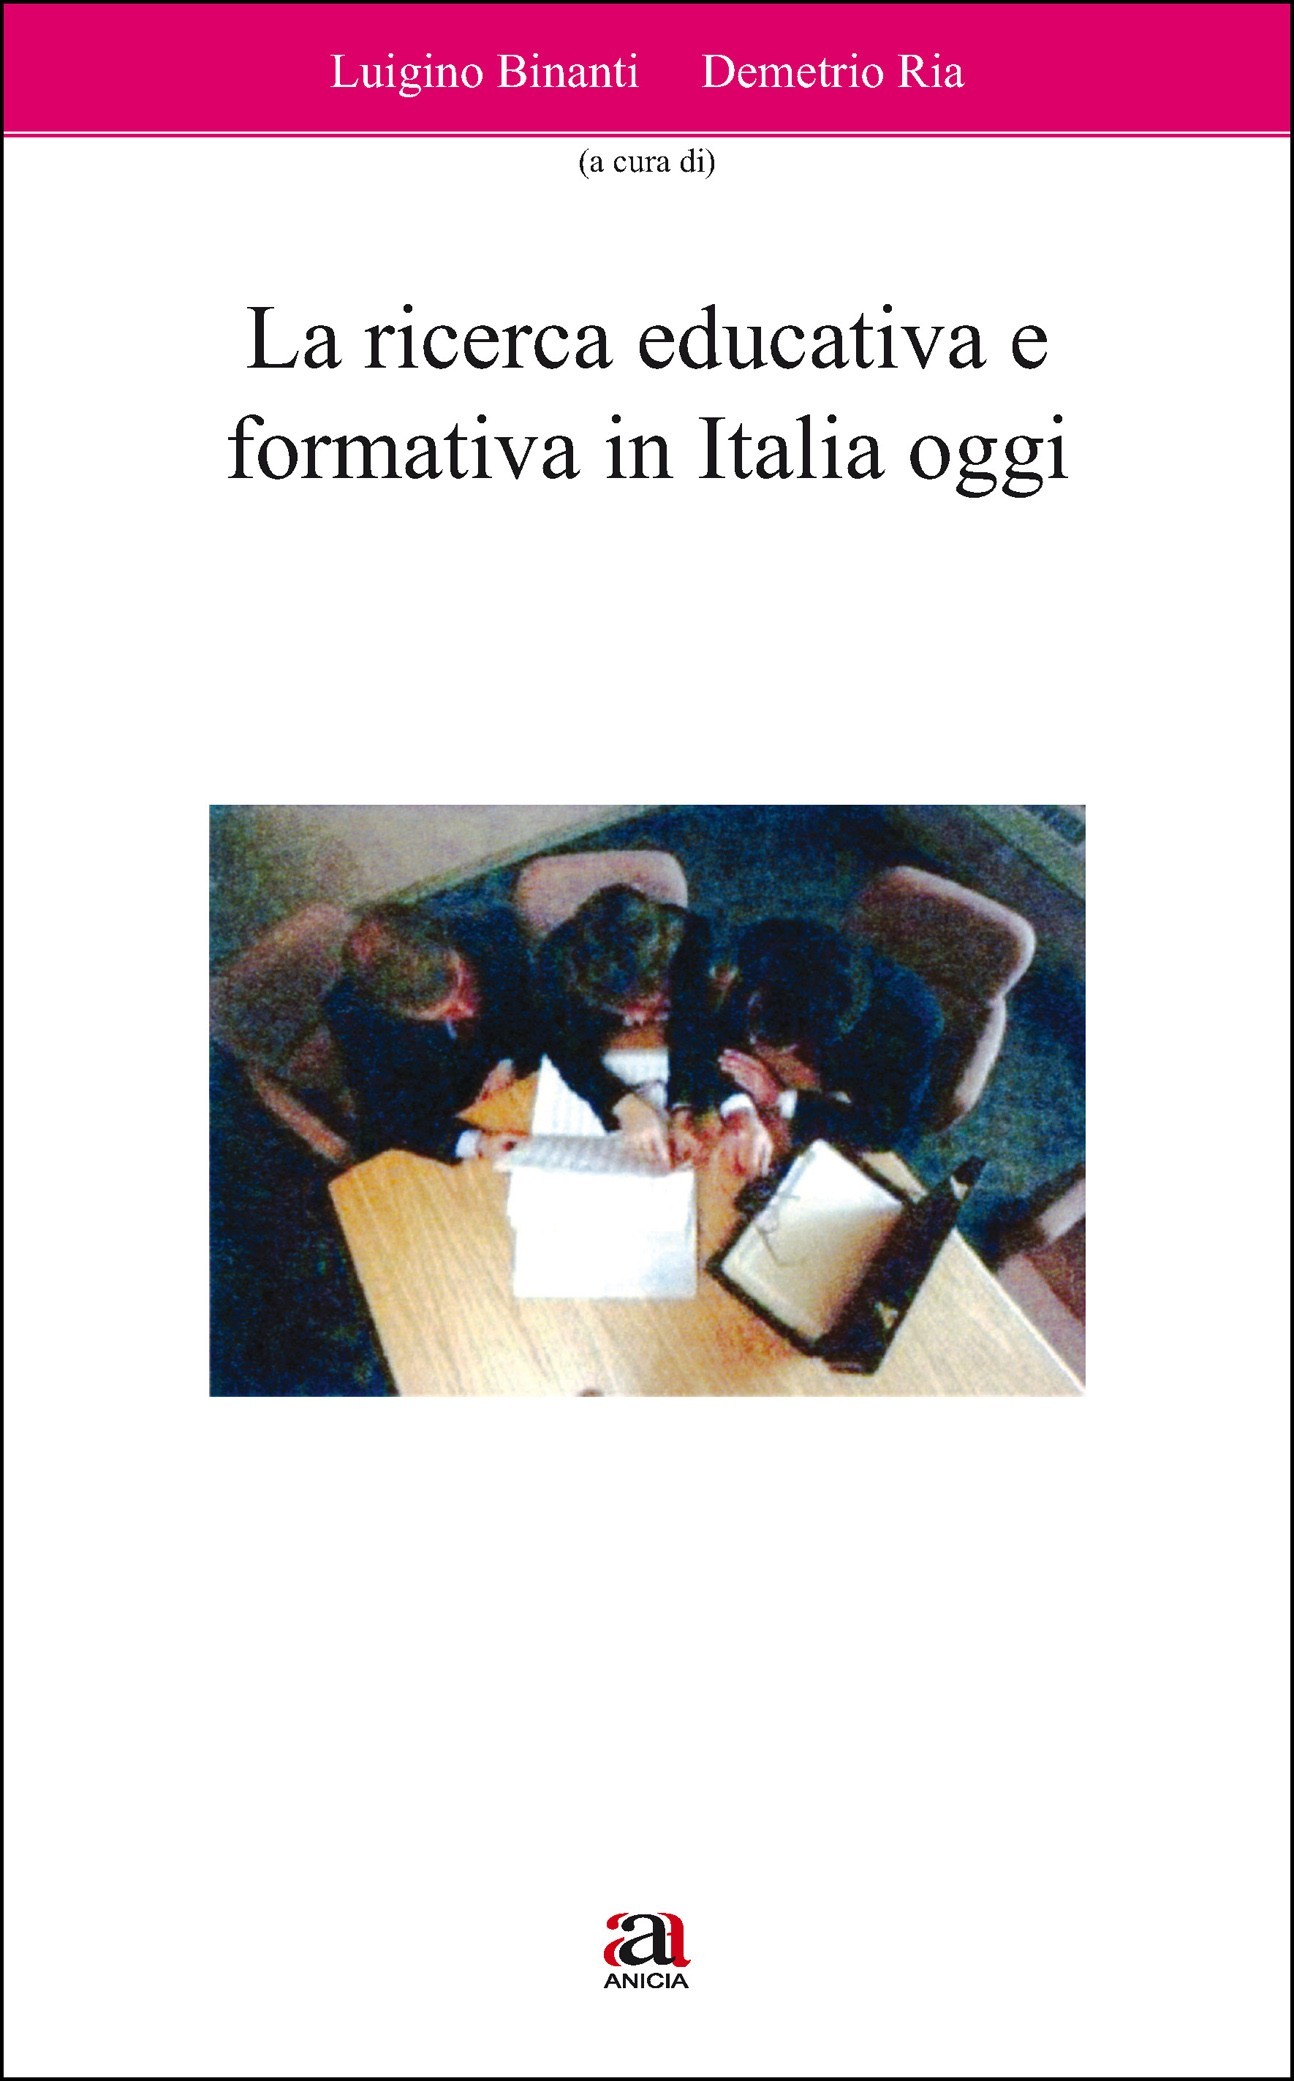 La ricerca educativa e formativa in Italia oggi